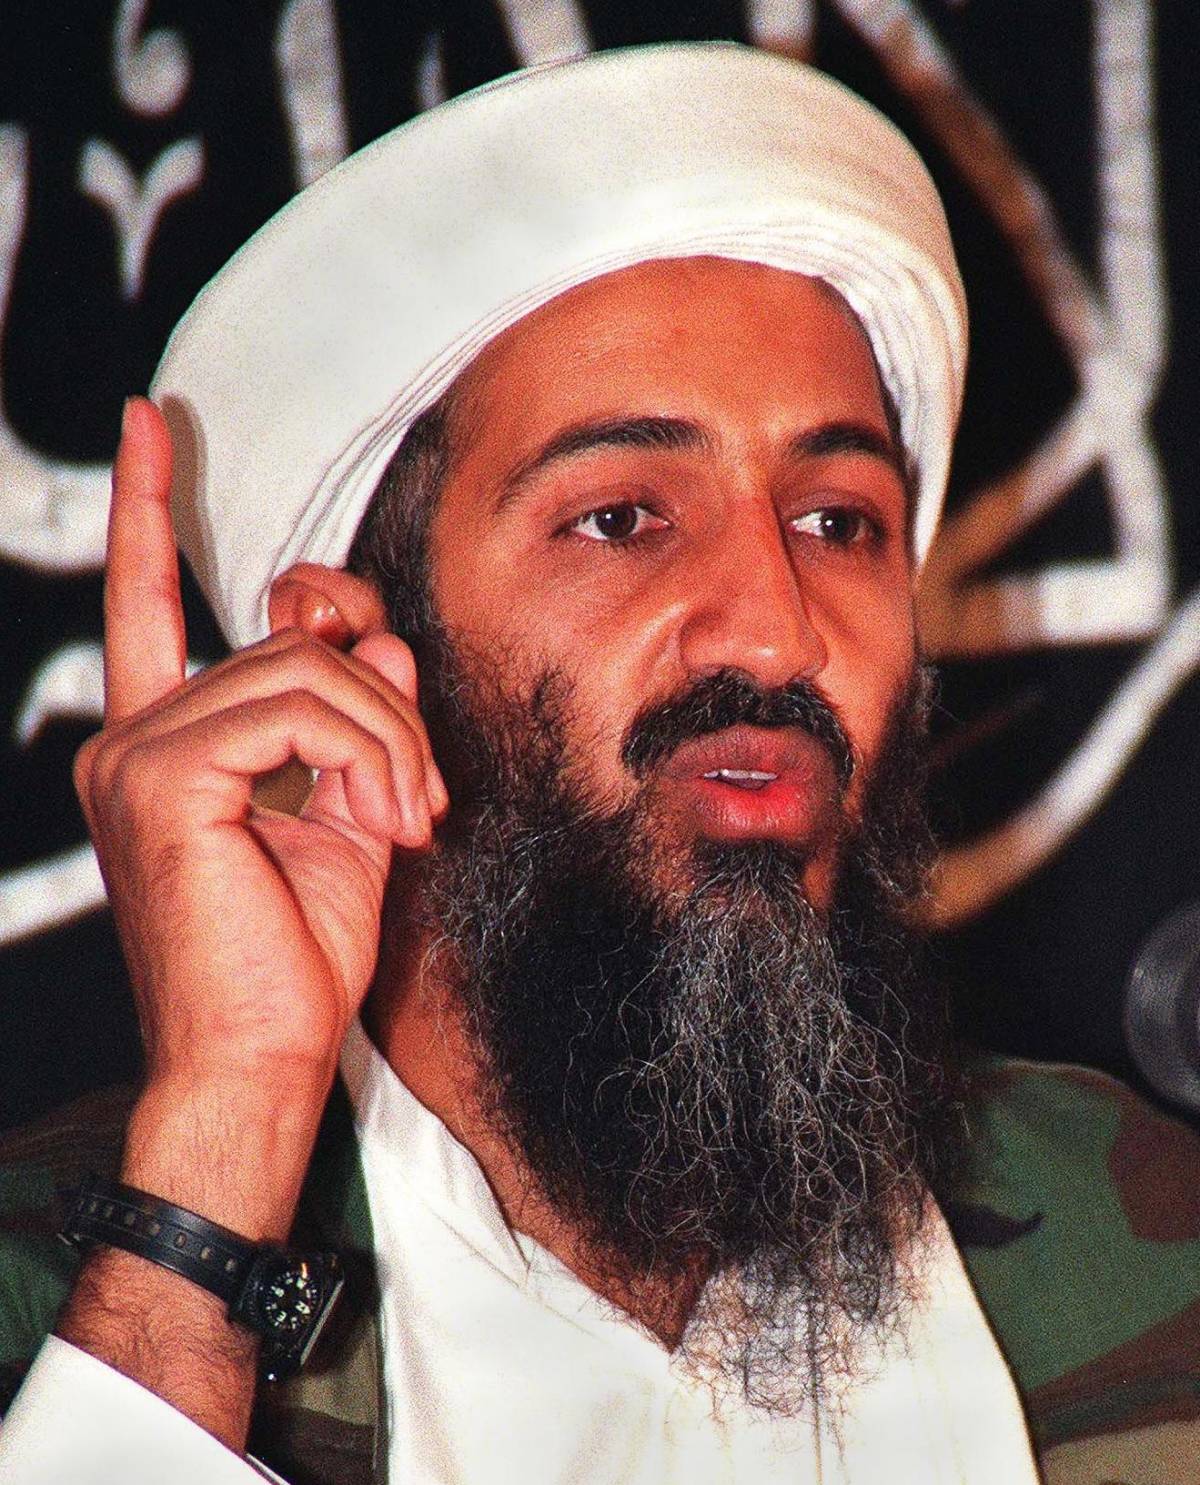 «Finto il blitz a Osama» Rimpallo di accuse tra un Pulitzer e gli Usa